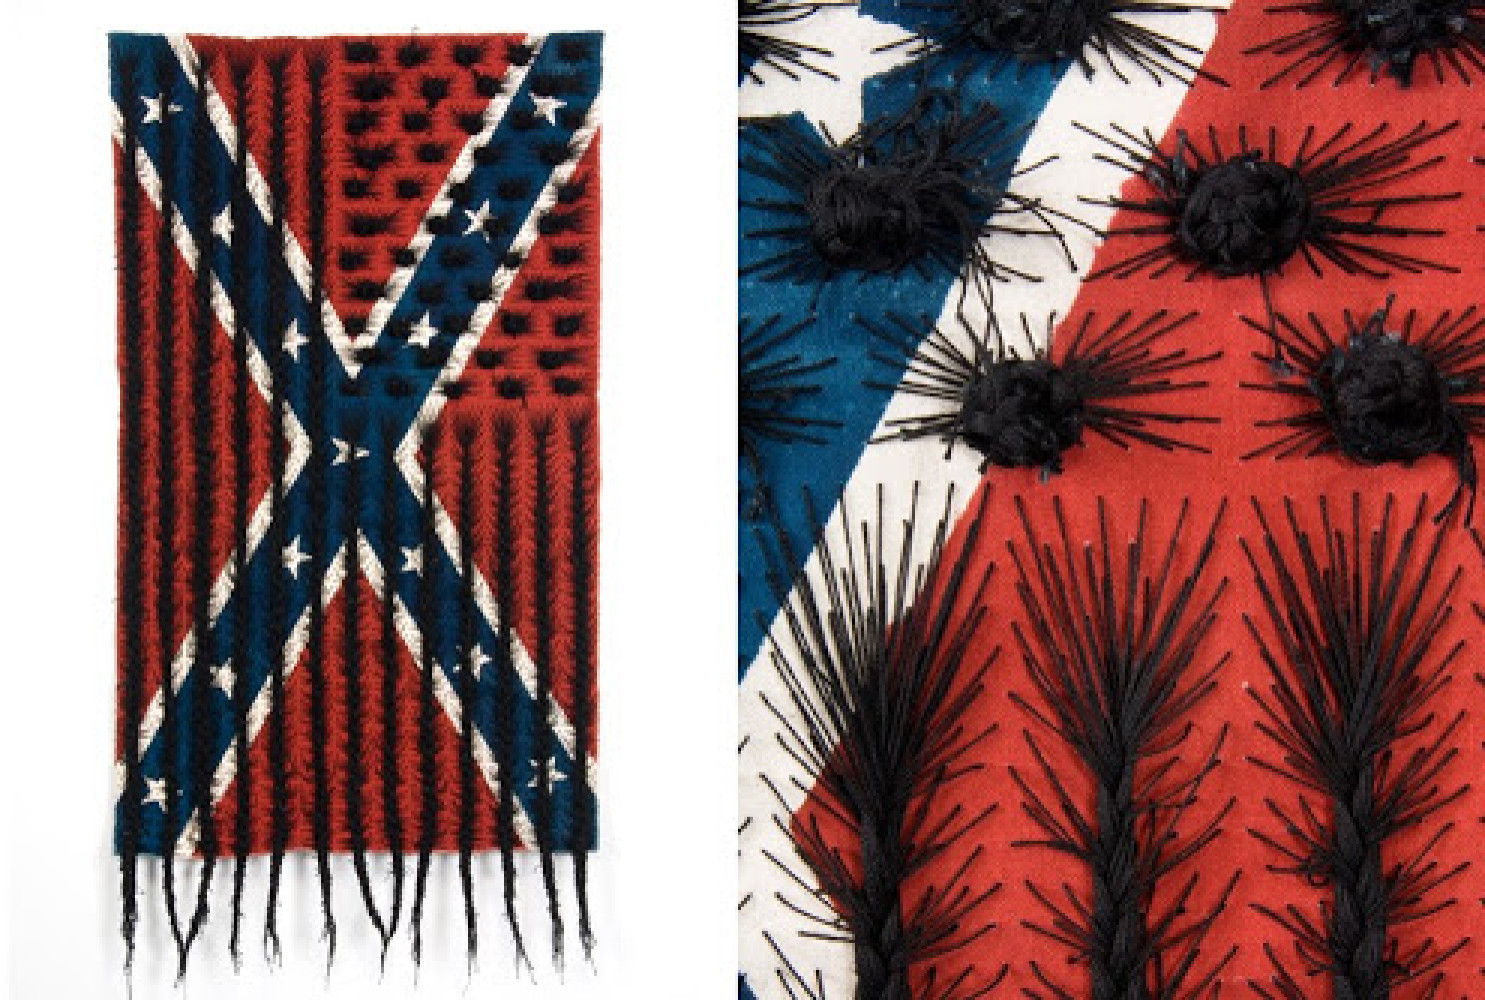 Black Hair Flag by Sonya Clark, 2010, cloth and thread